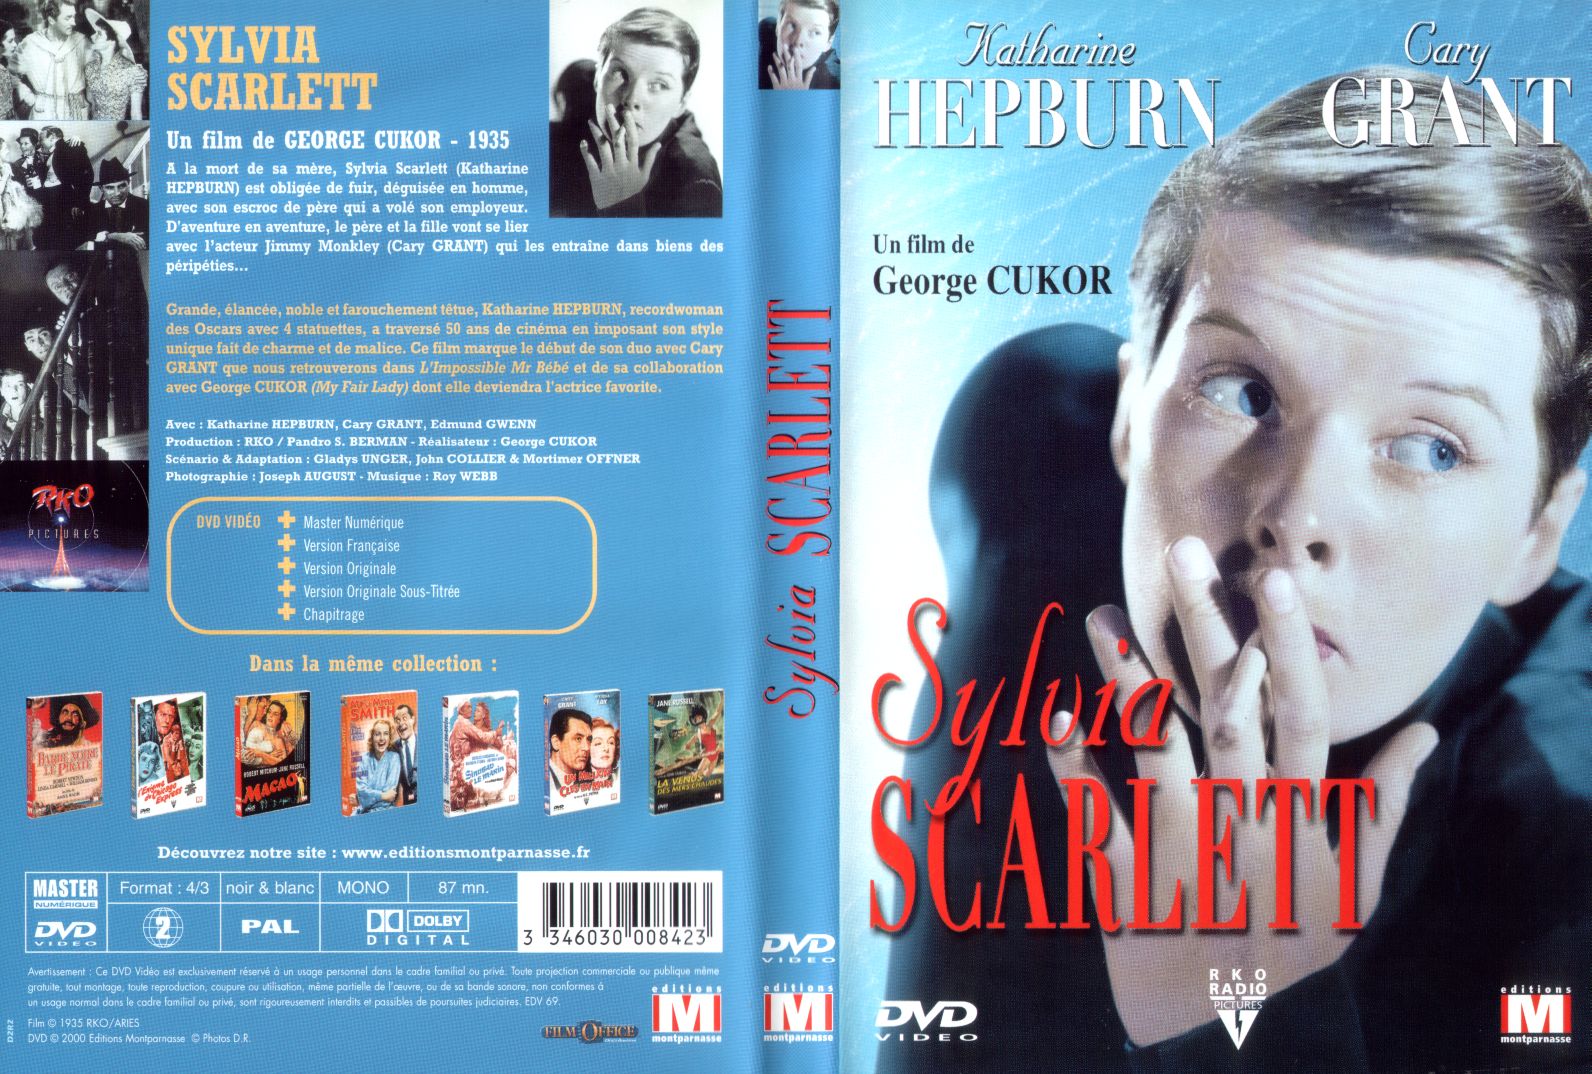 Jaquette DVD Sylvia Scarlett